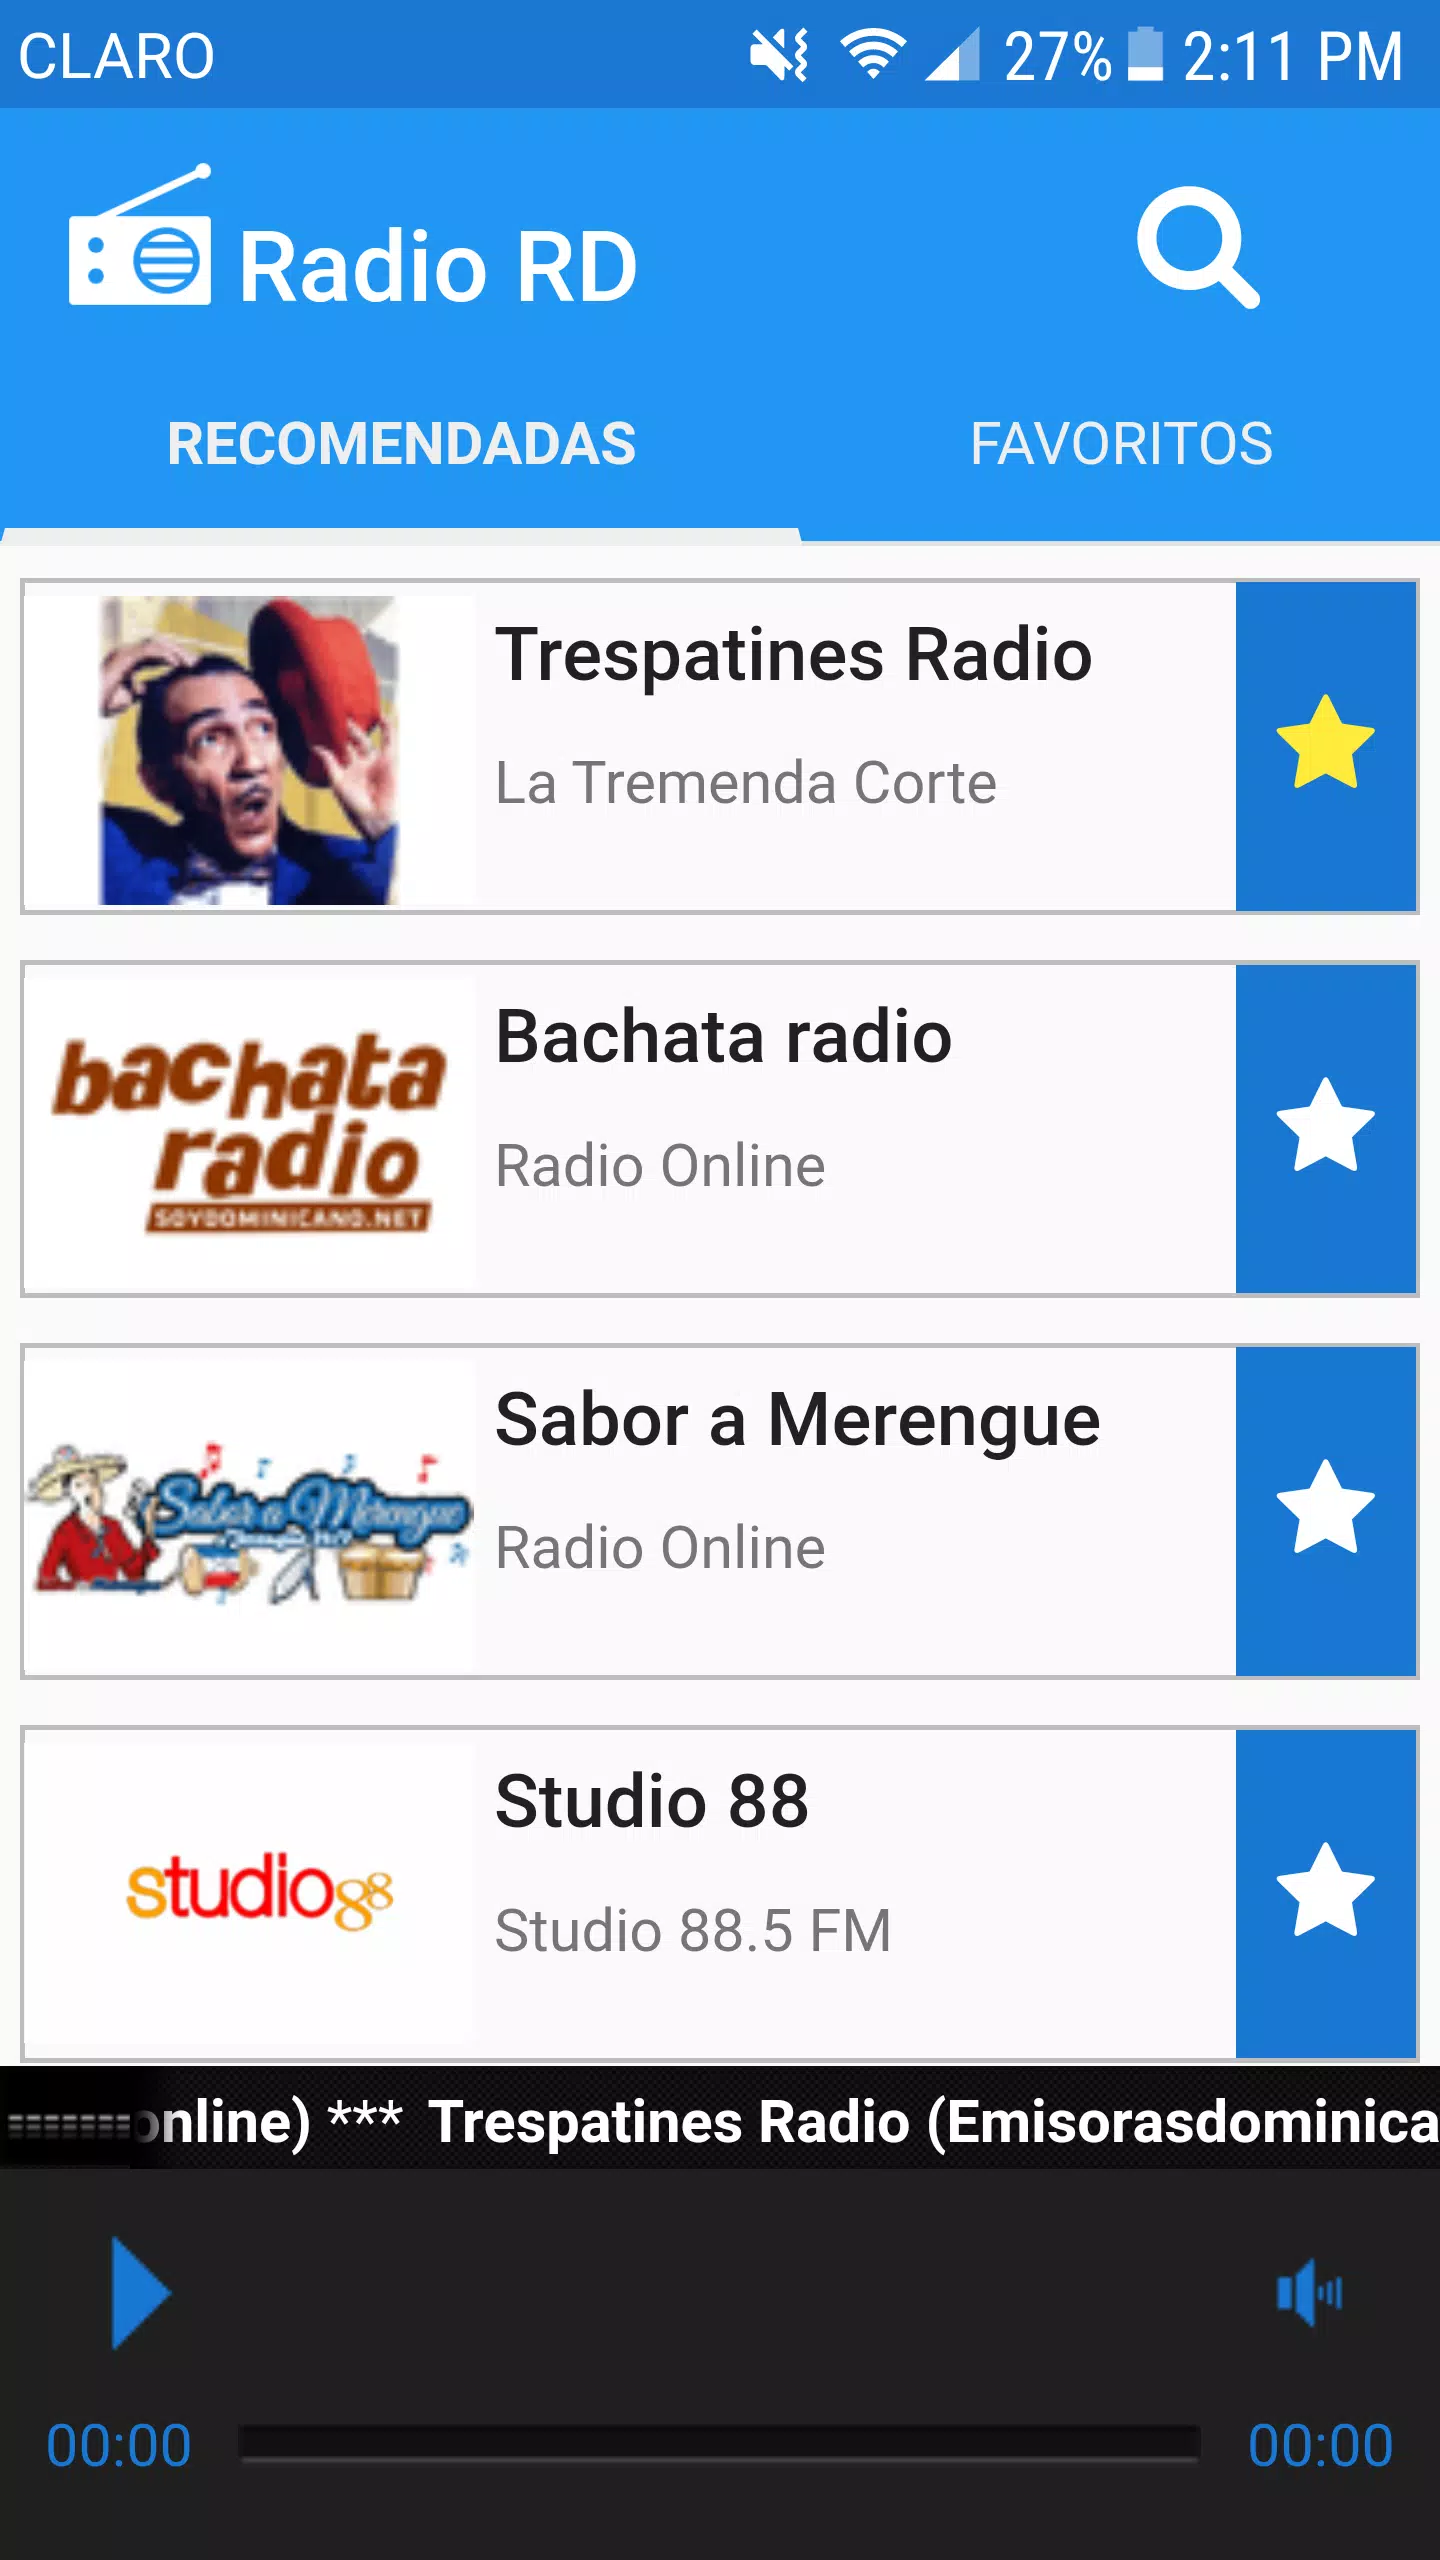 Emisoras Dominicanas - Radio RD - FM & AM en Vivo APK for Android Download